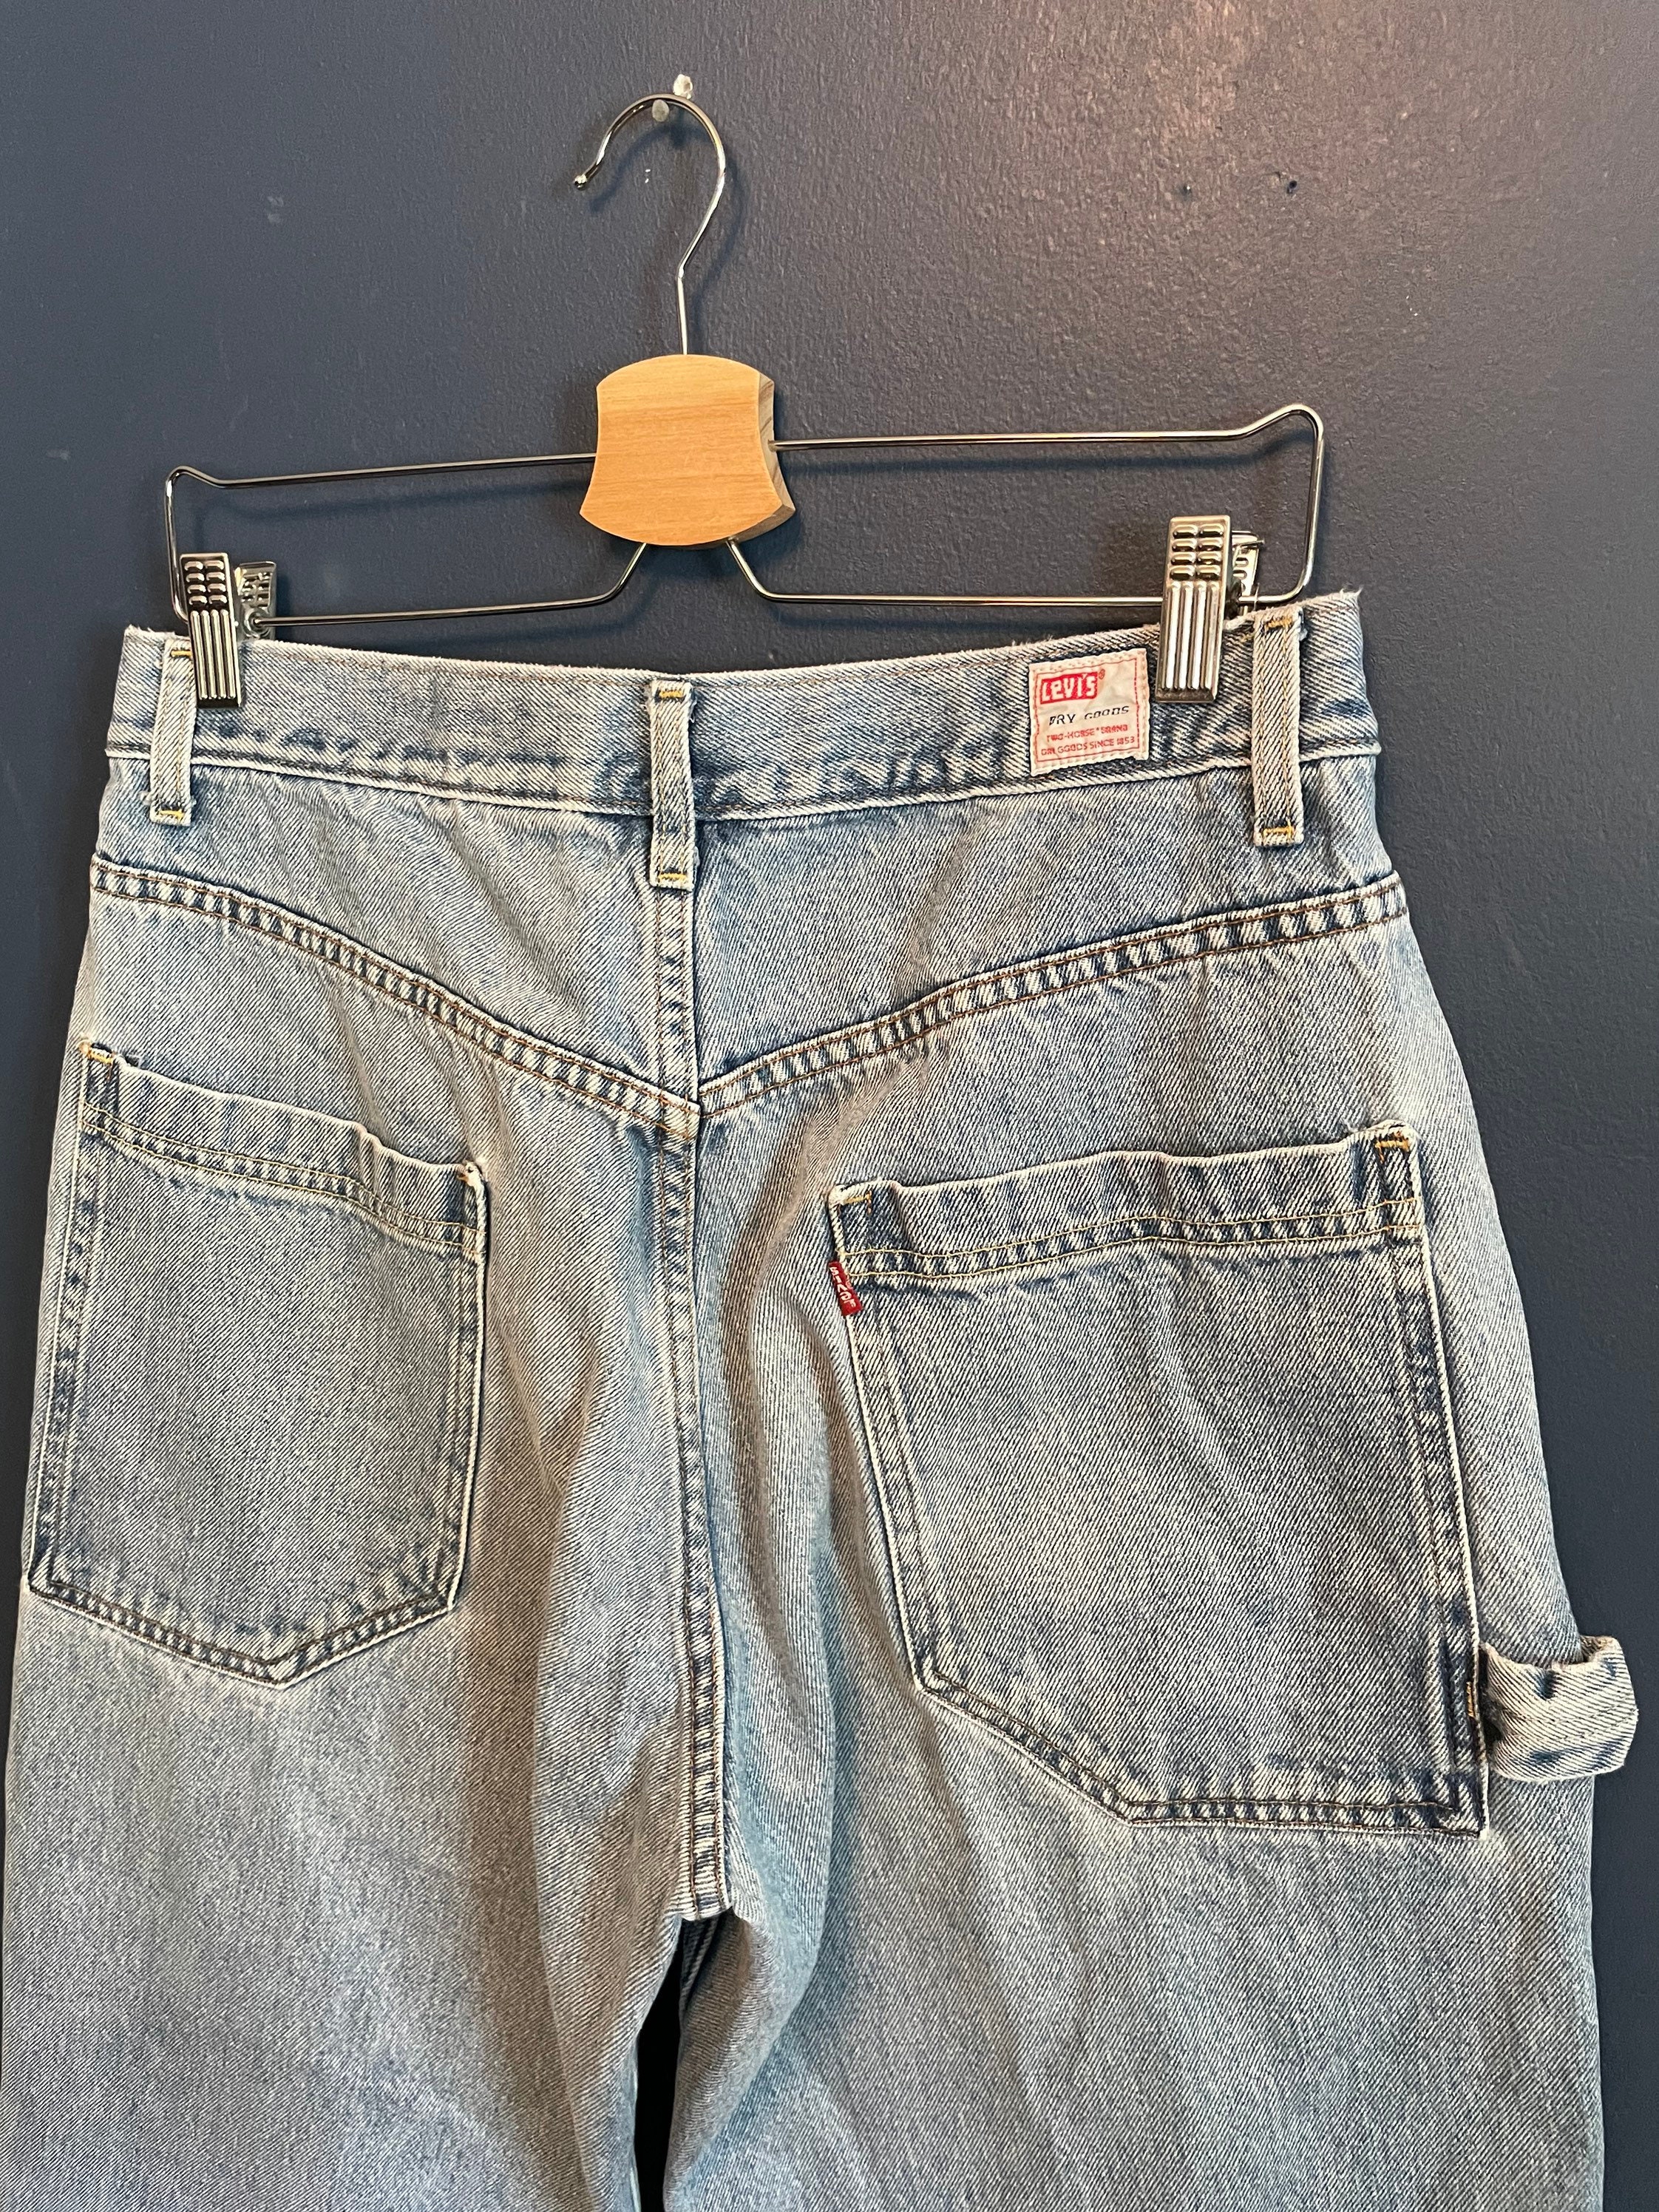 Vintage 90s Levis Dry Goods Denim Carpenter Pants Size 34x30 - Etsy New  Zealand